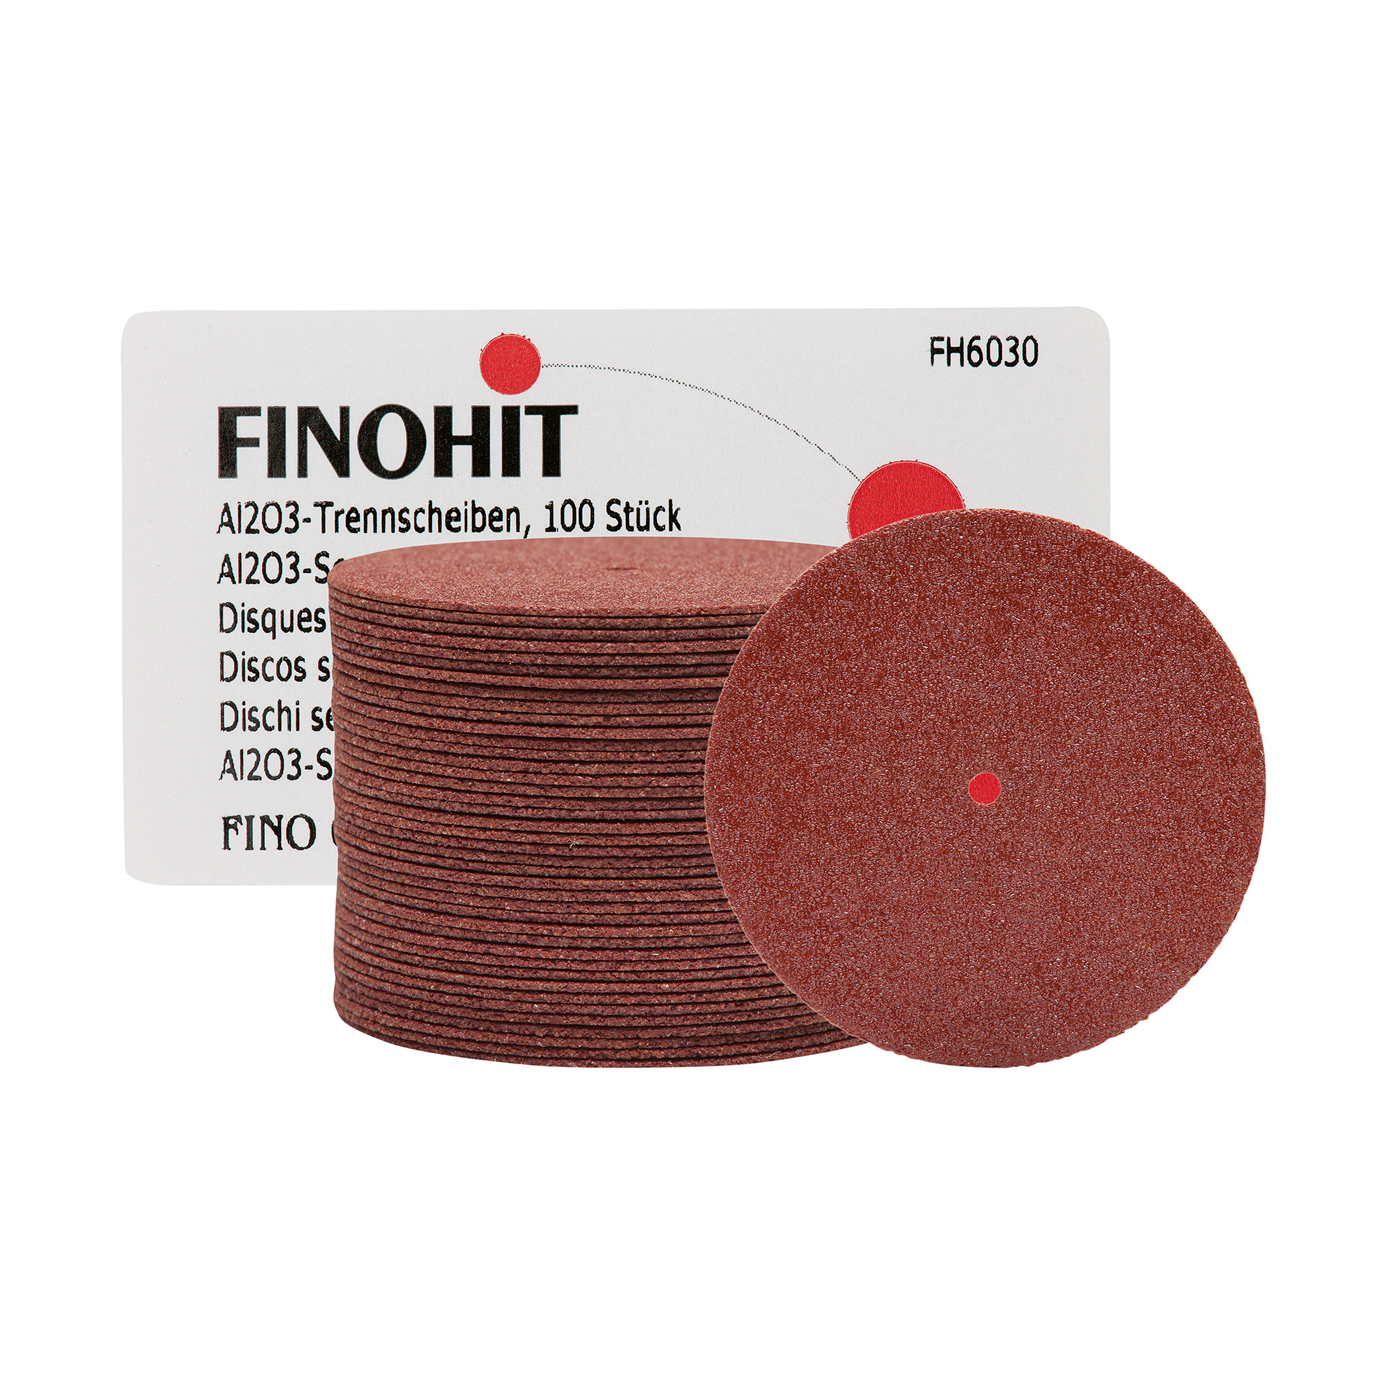 FINOHIT Separating Discs, Aluminium Oxide, ø 38.0 x 0.7 mm - 100 pieces